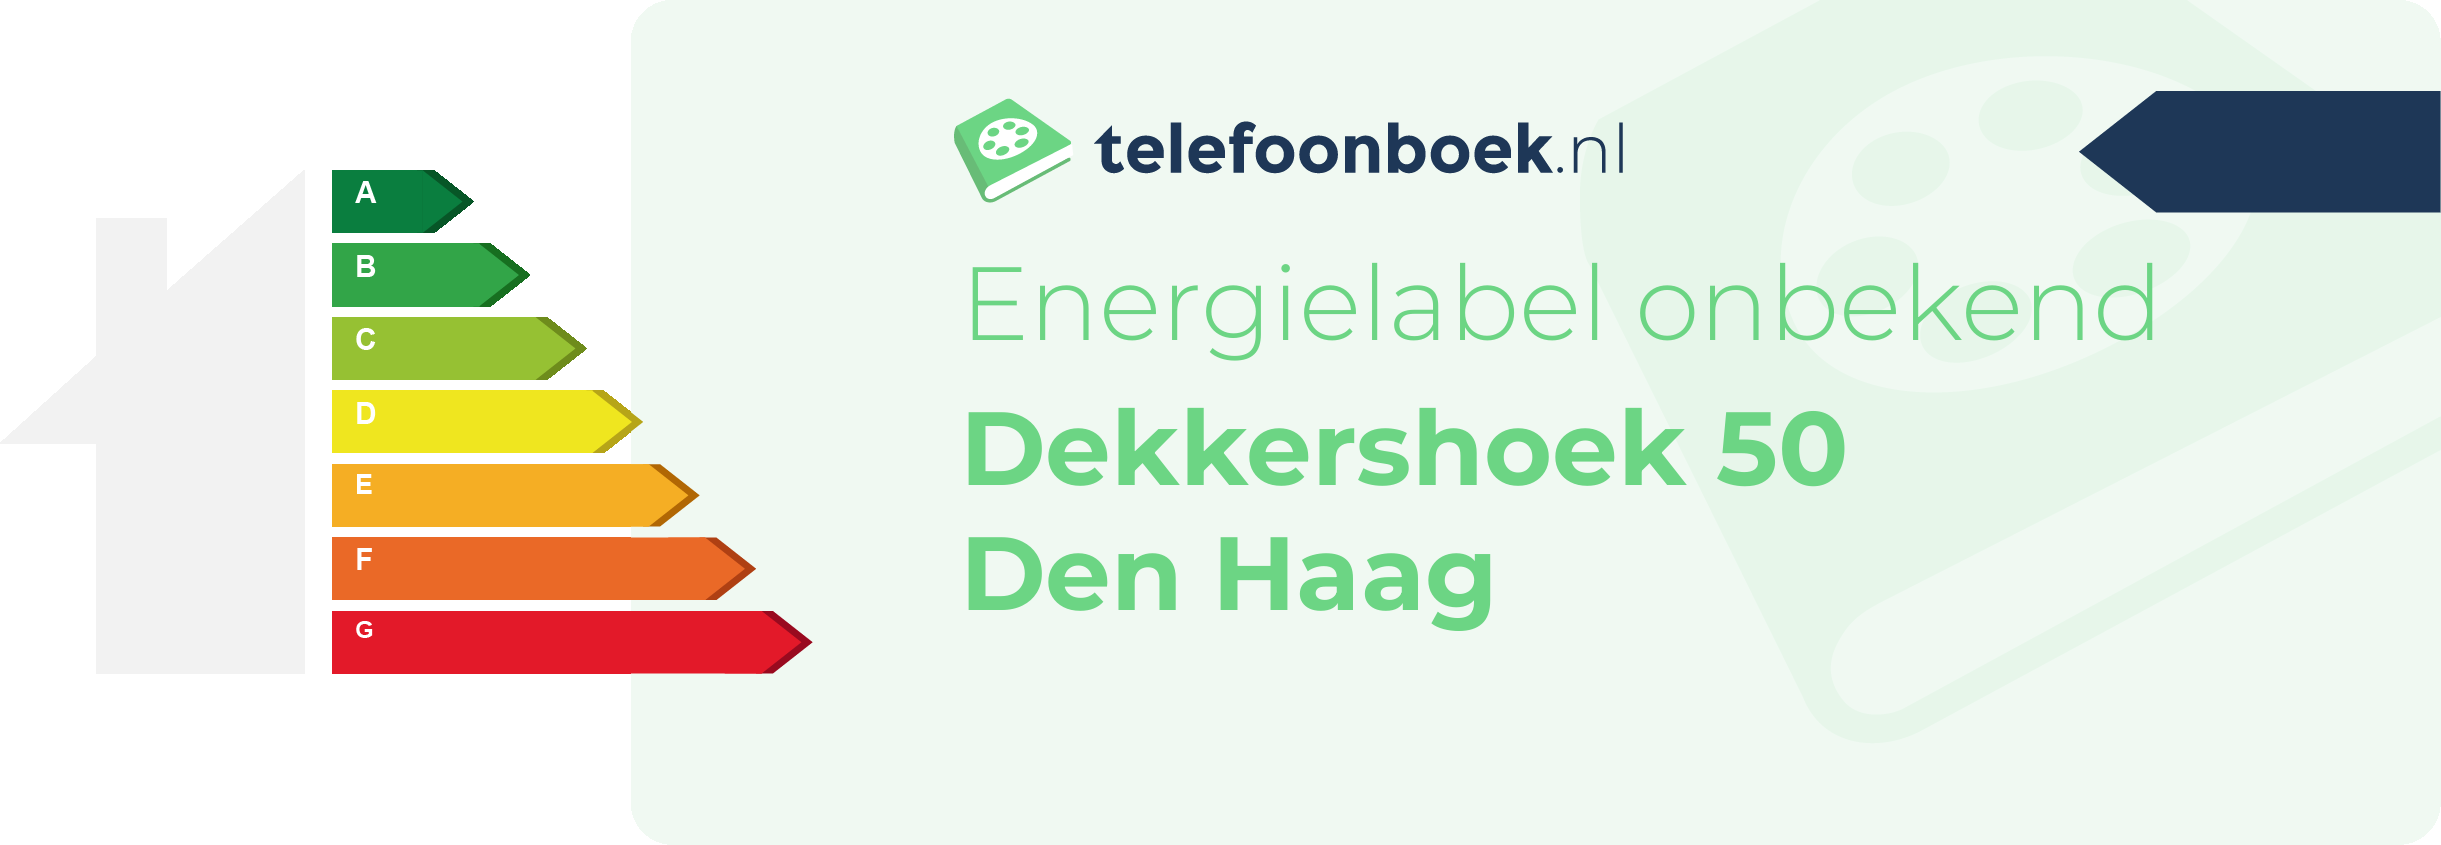 Energielabel Dekkershoek 50 Den Haag